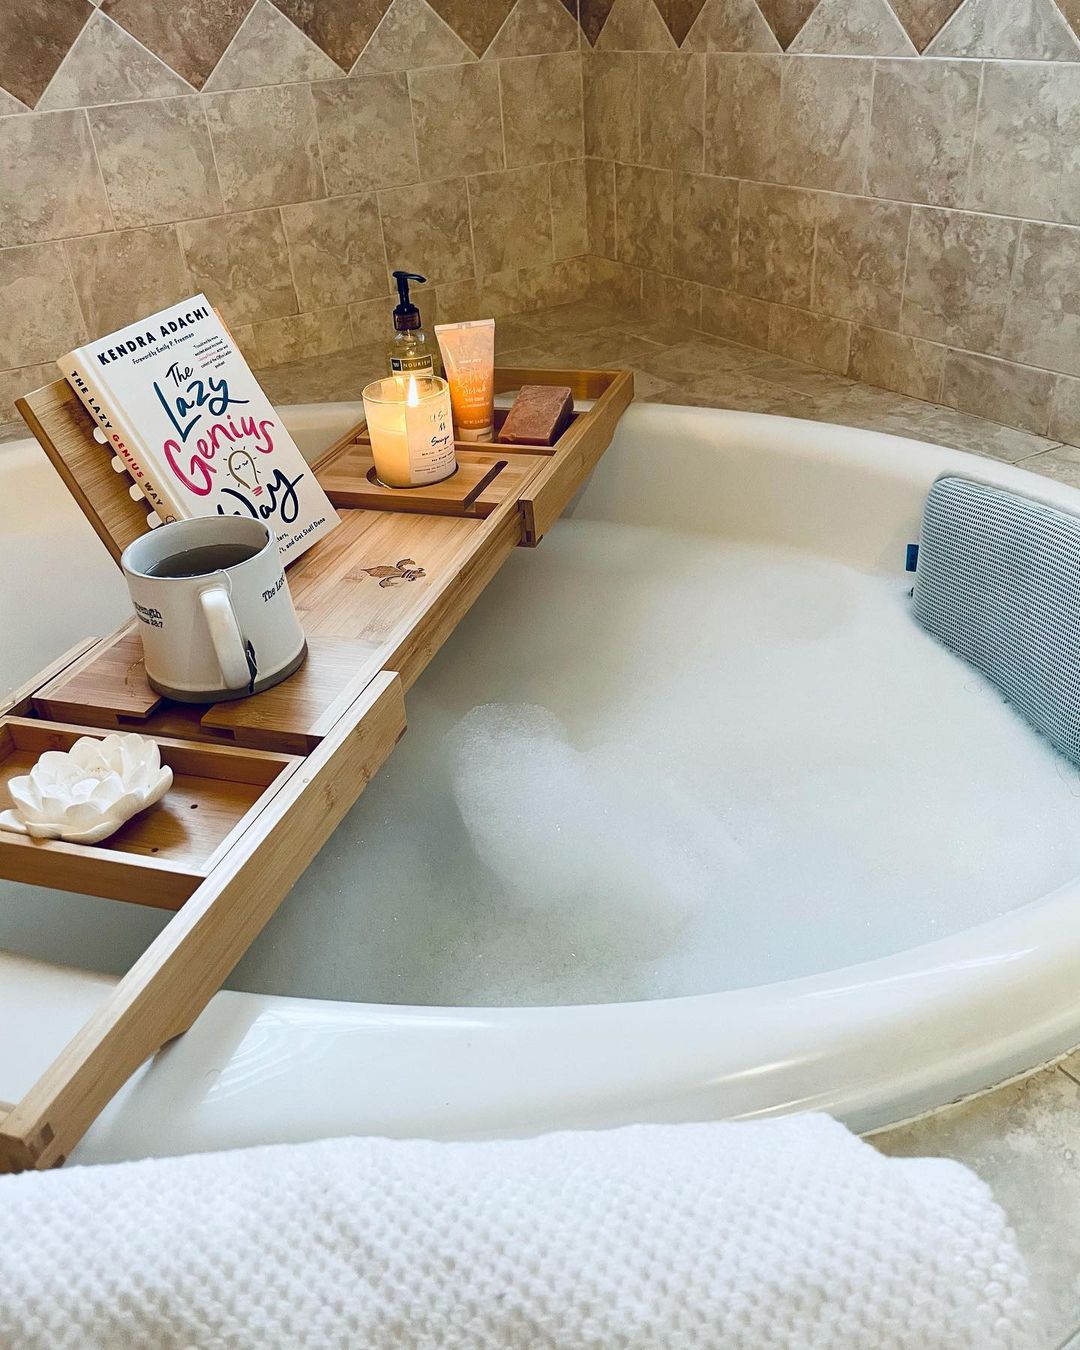 Enjoy a Cozy Bath with a Well-Organized Wooden Tray